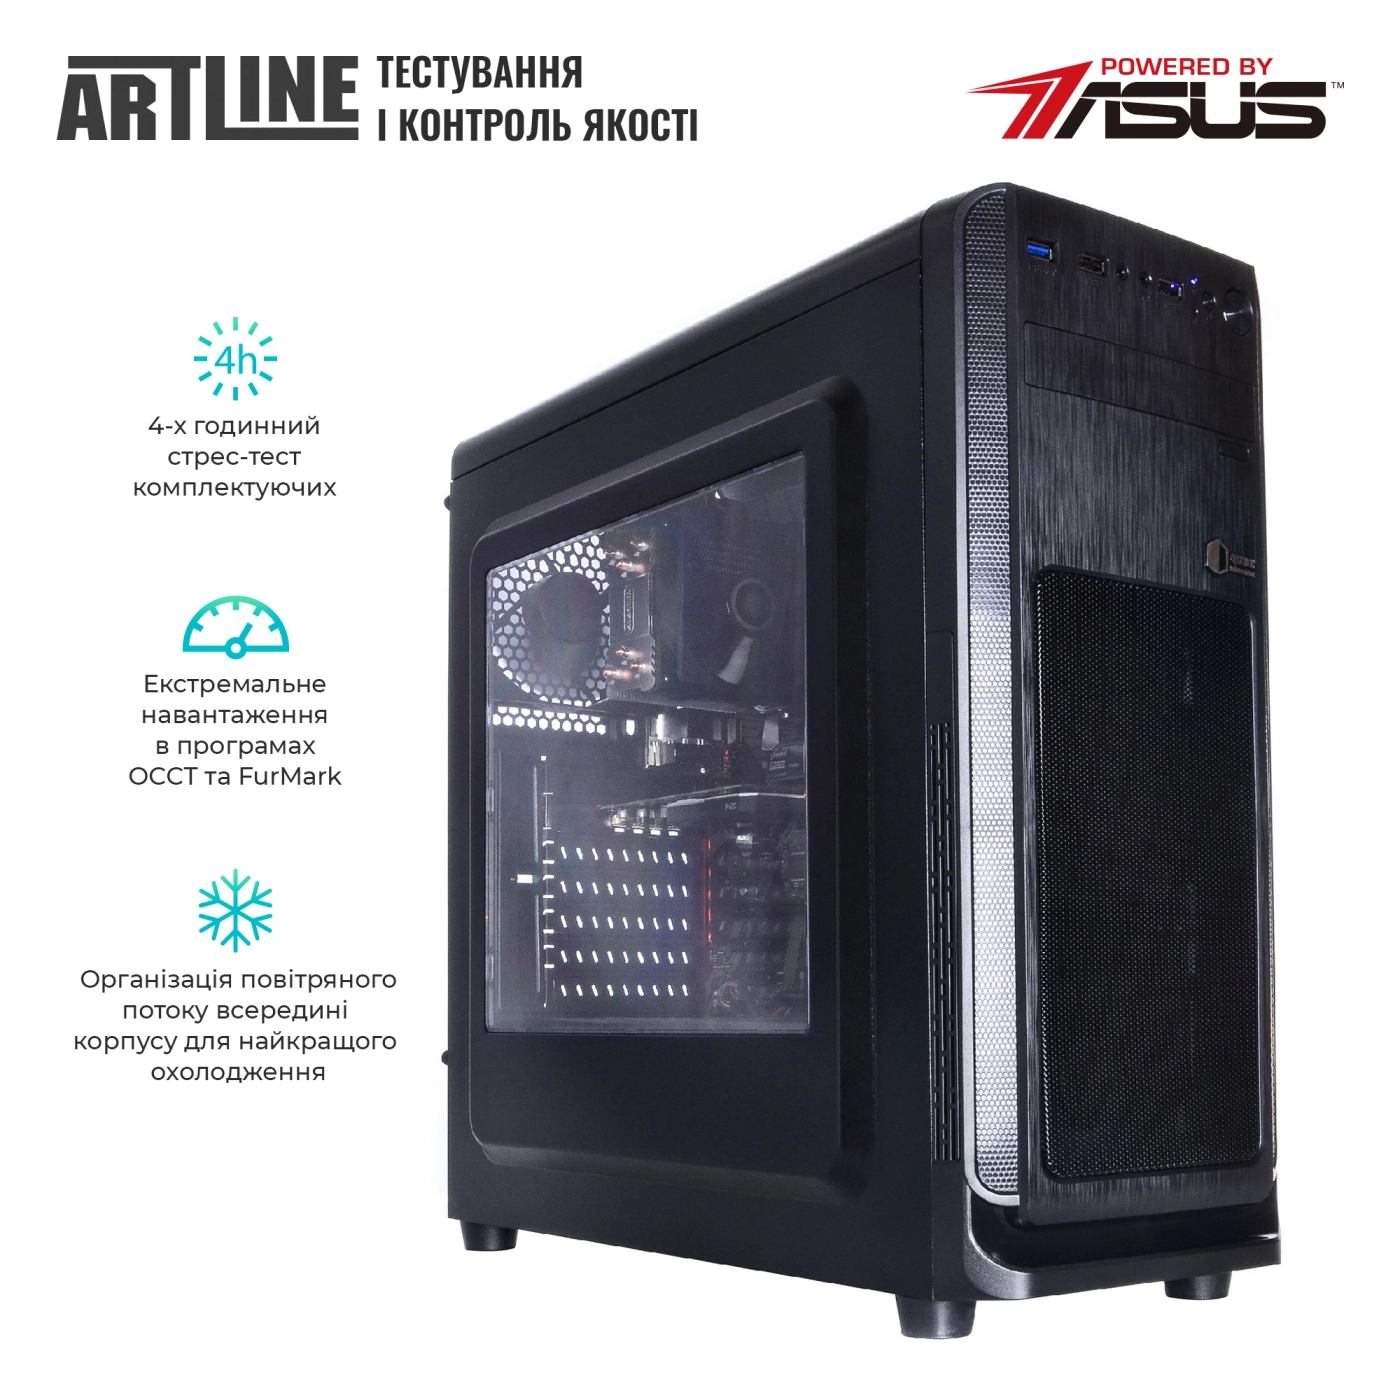 Купить Сервер ARTLINE Business T25v18 - фото 6